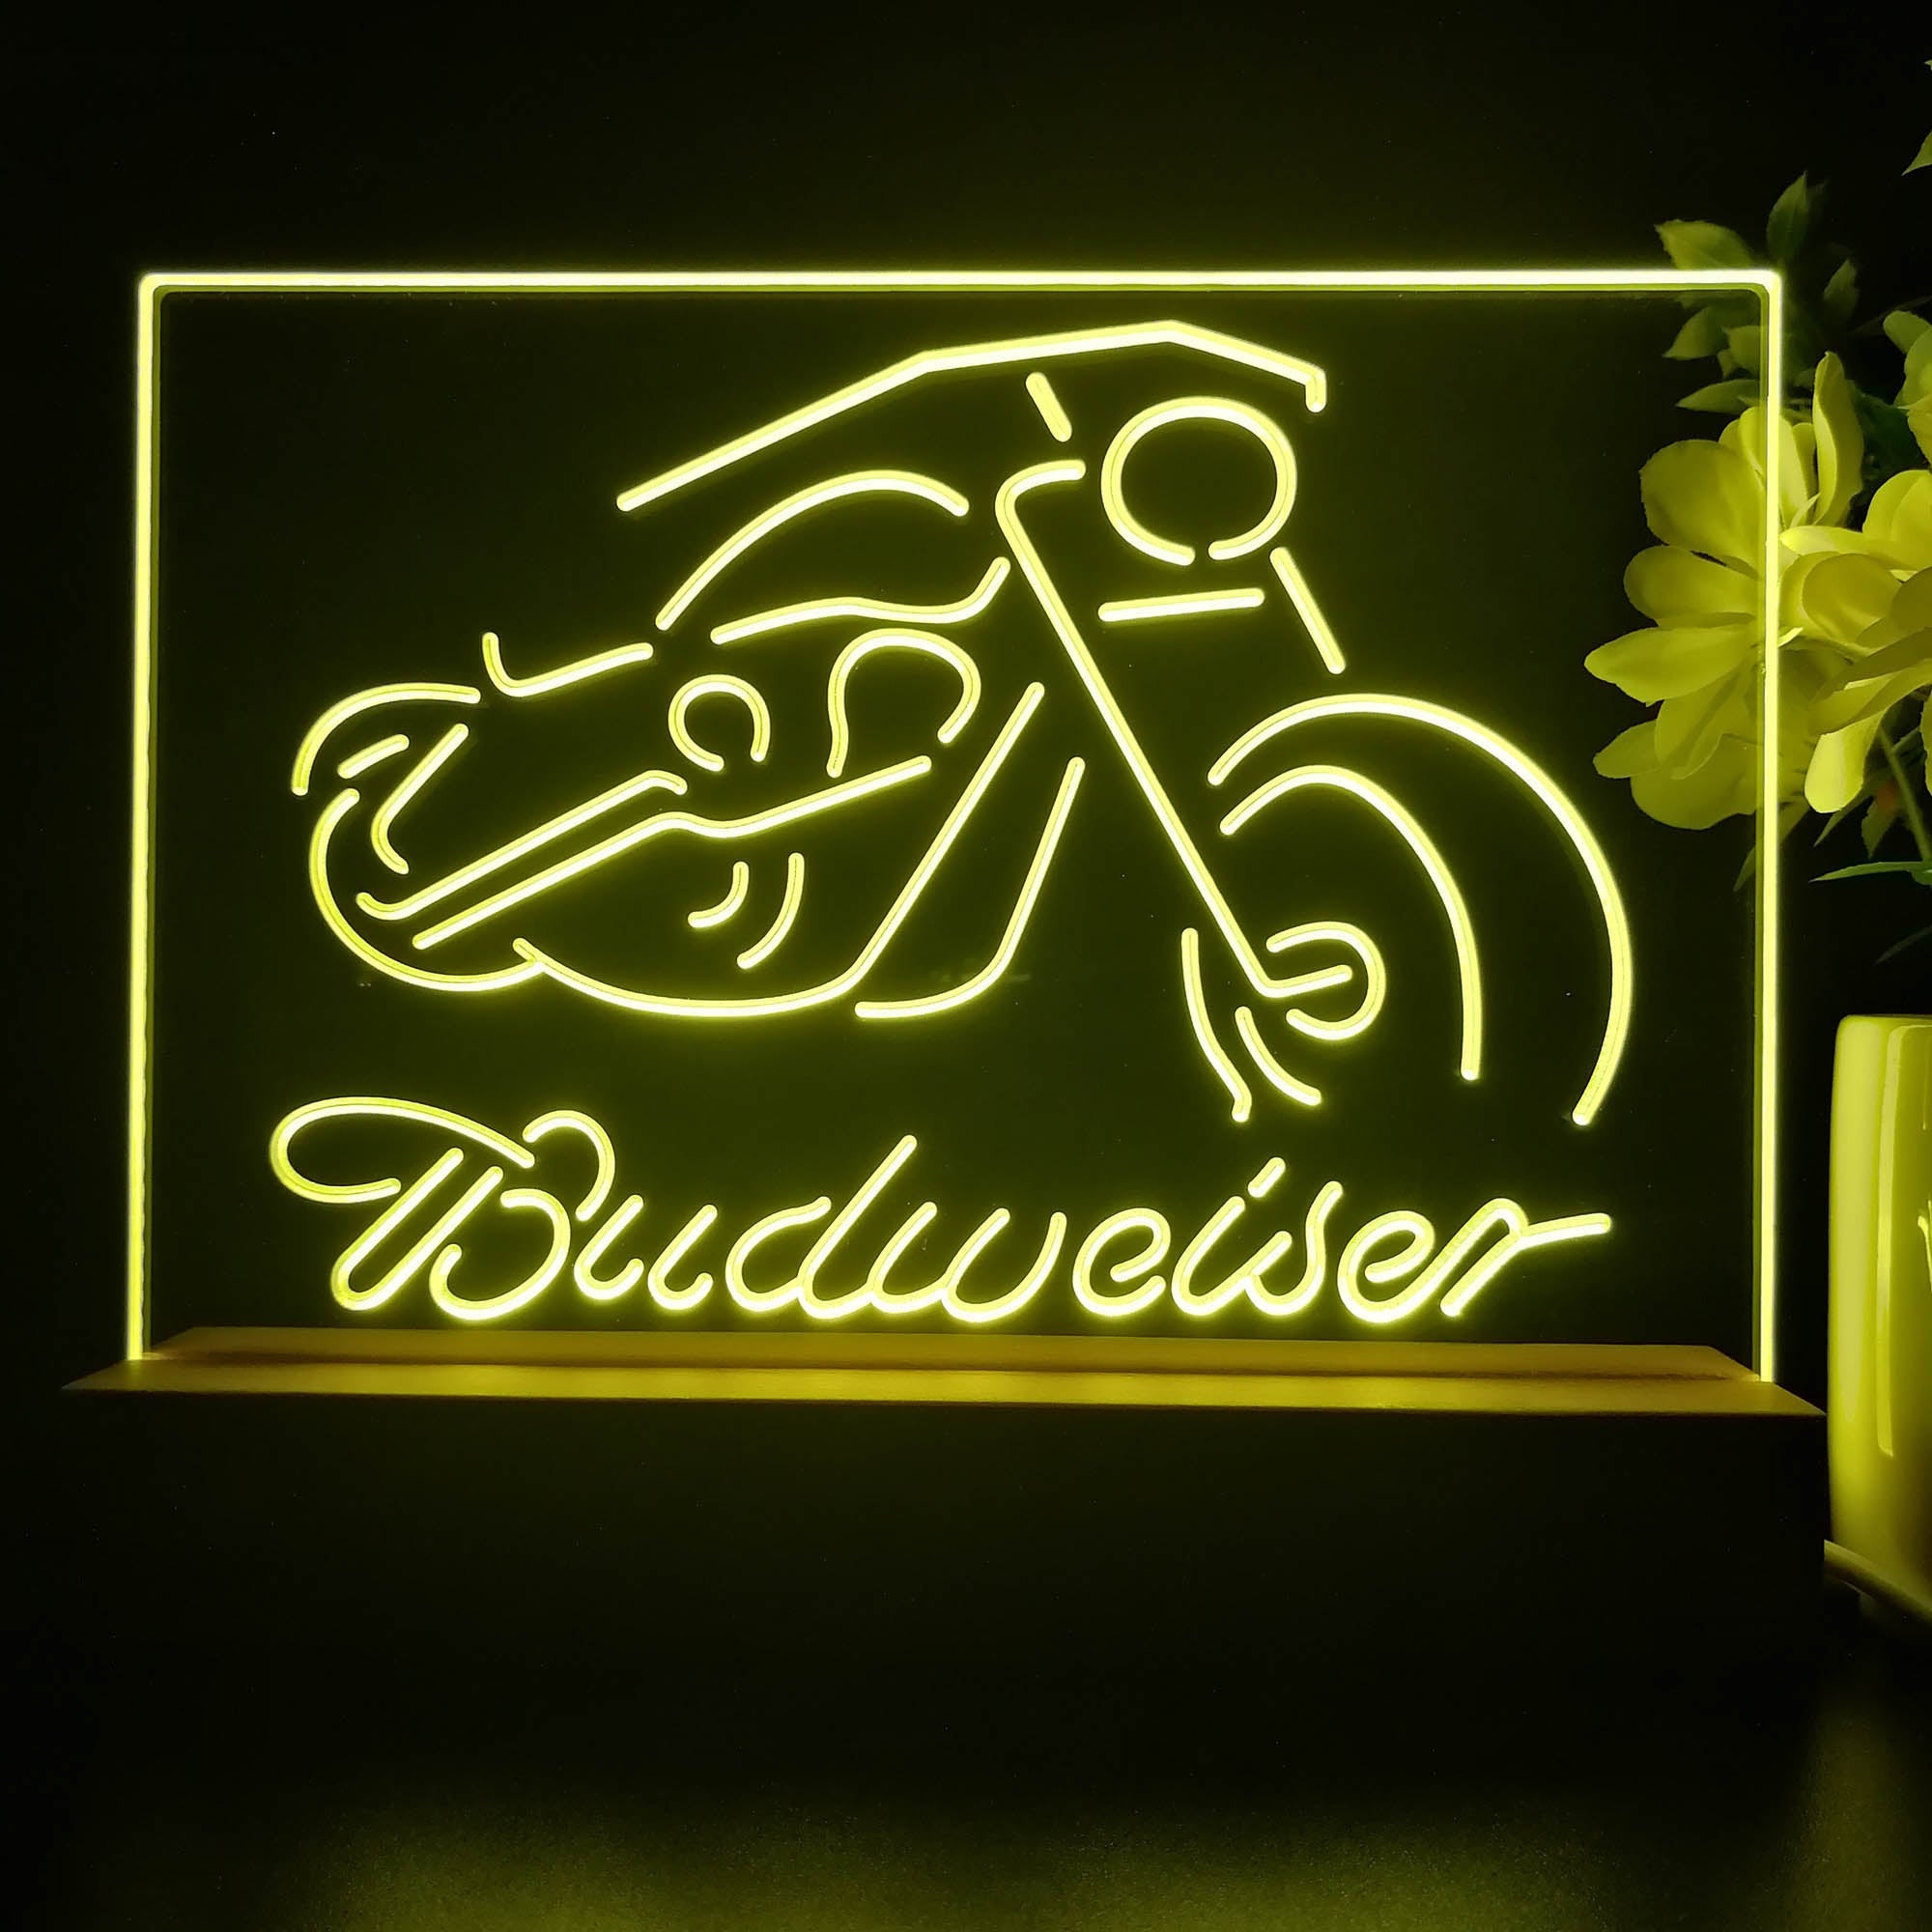 Budweiser Motorcycle Garage Neon Sign Pub Bar Lamp